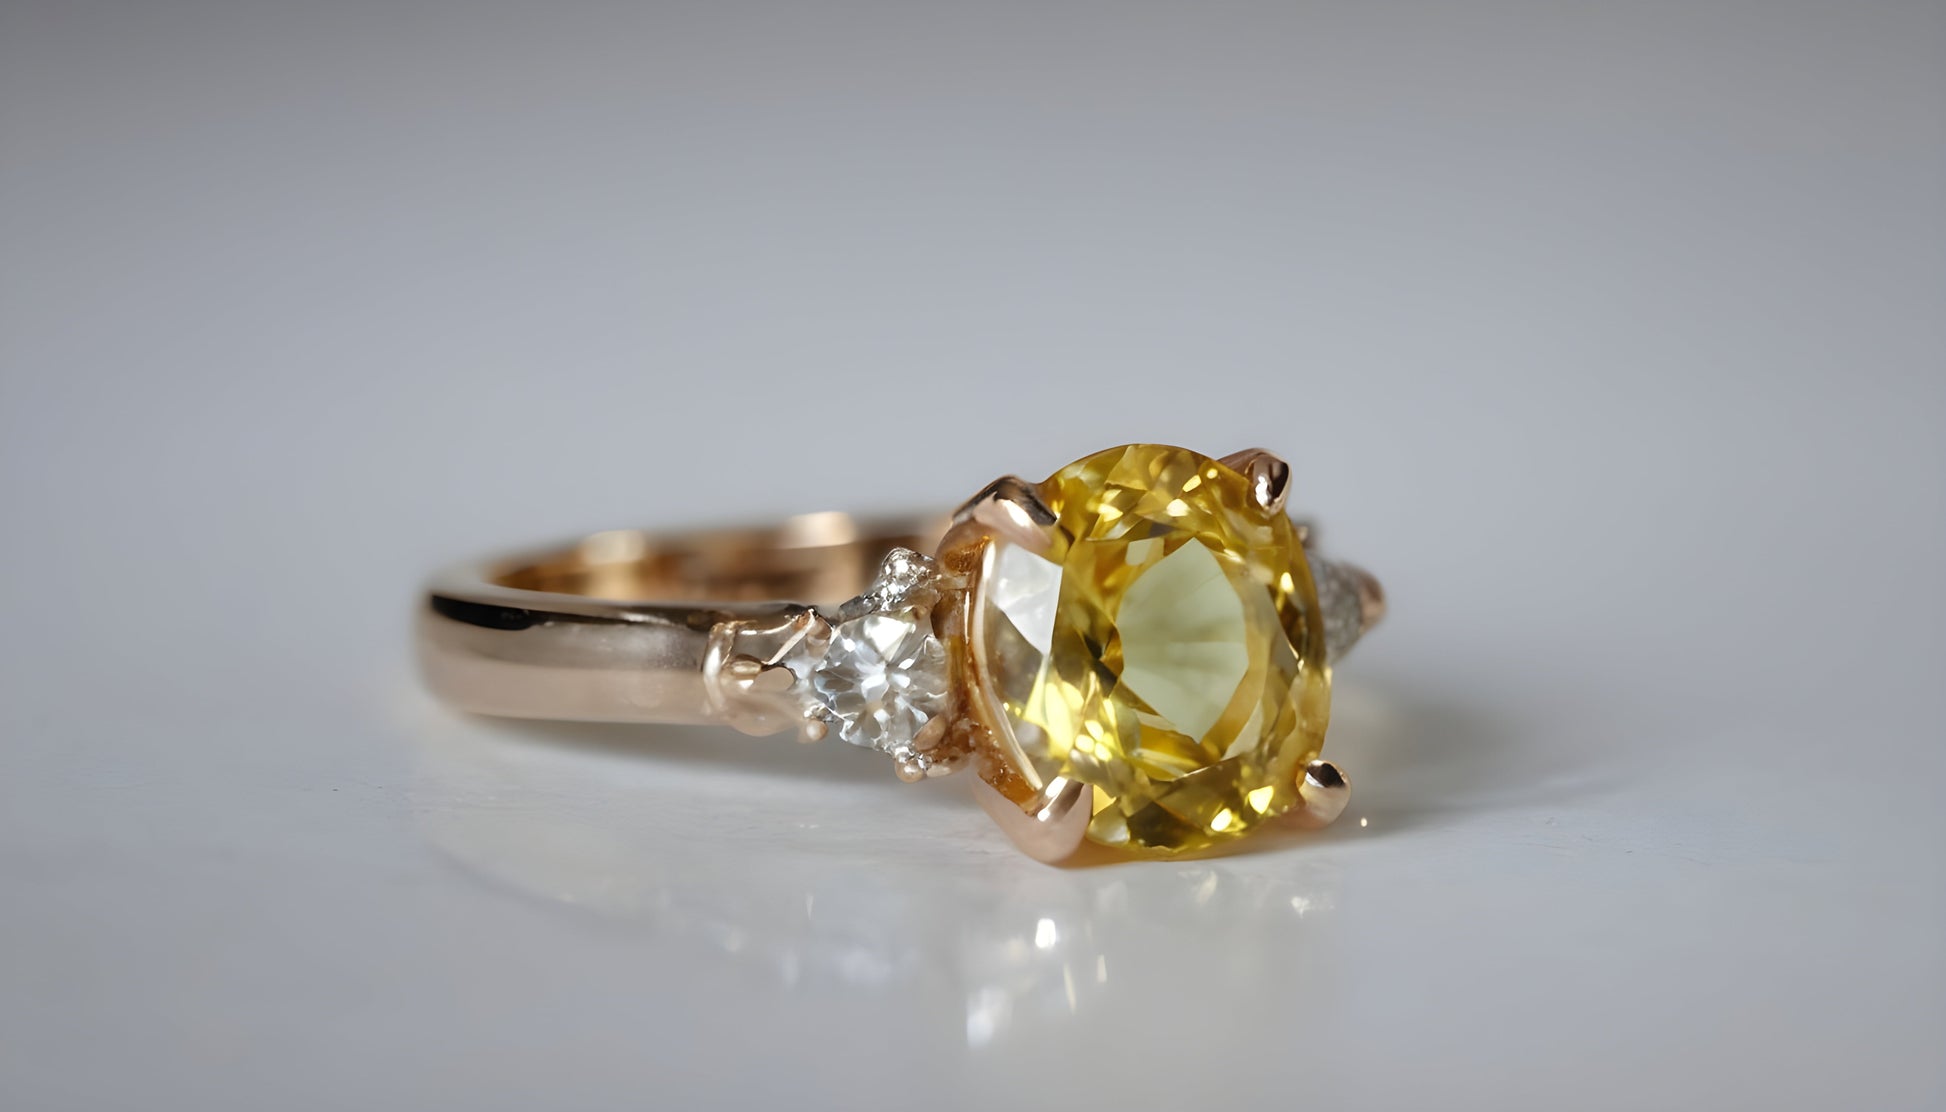 Vedic Crystals Super Premium Yellow Sapphire (pukhraj) ratti best price image 1